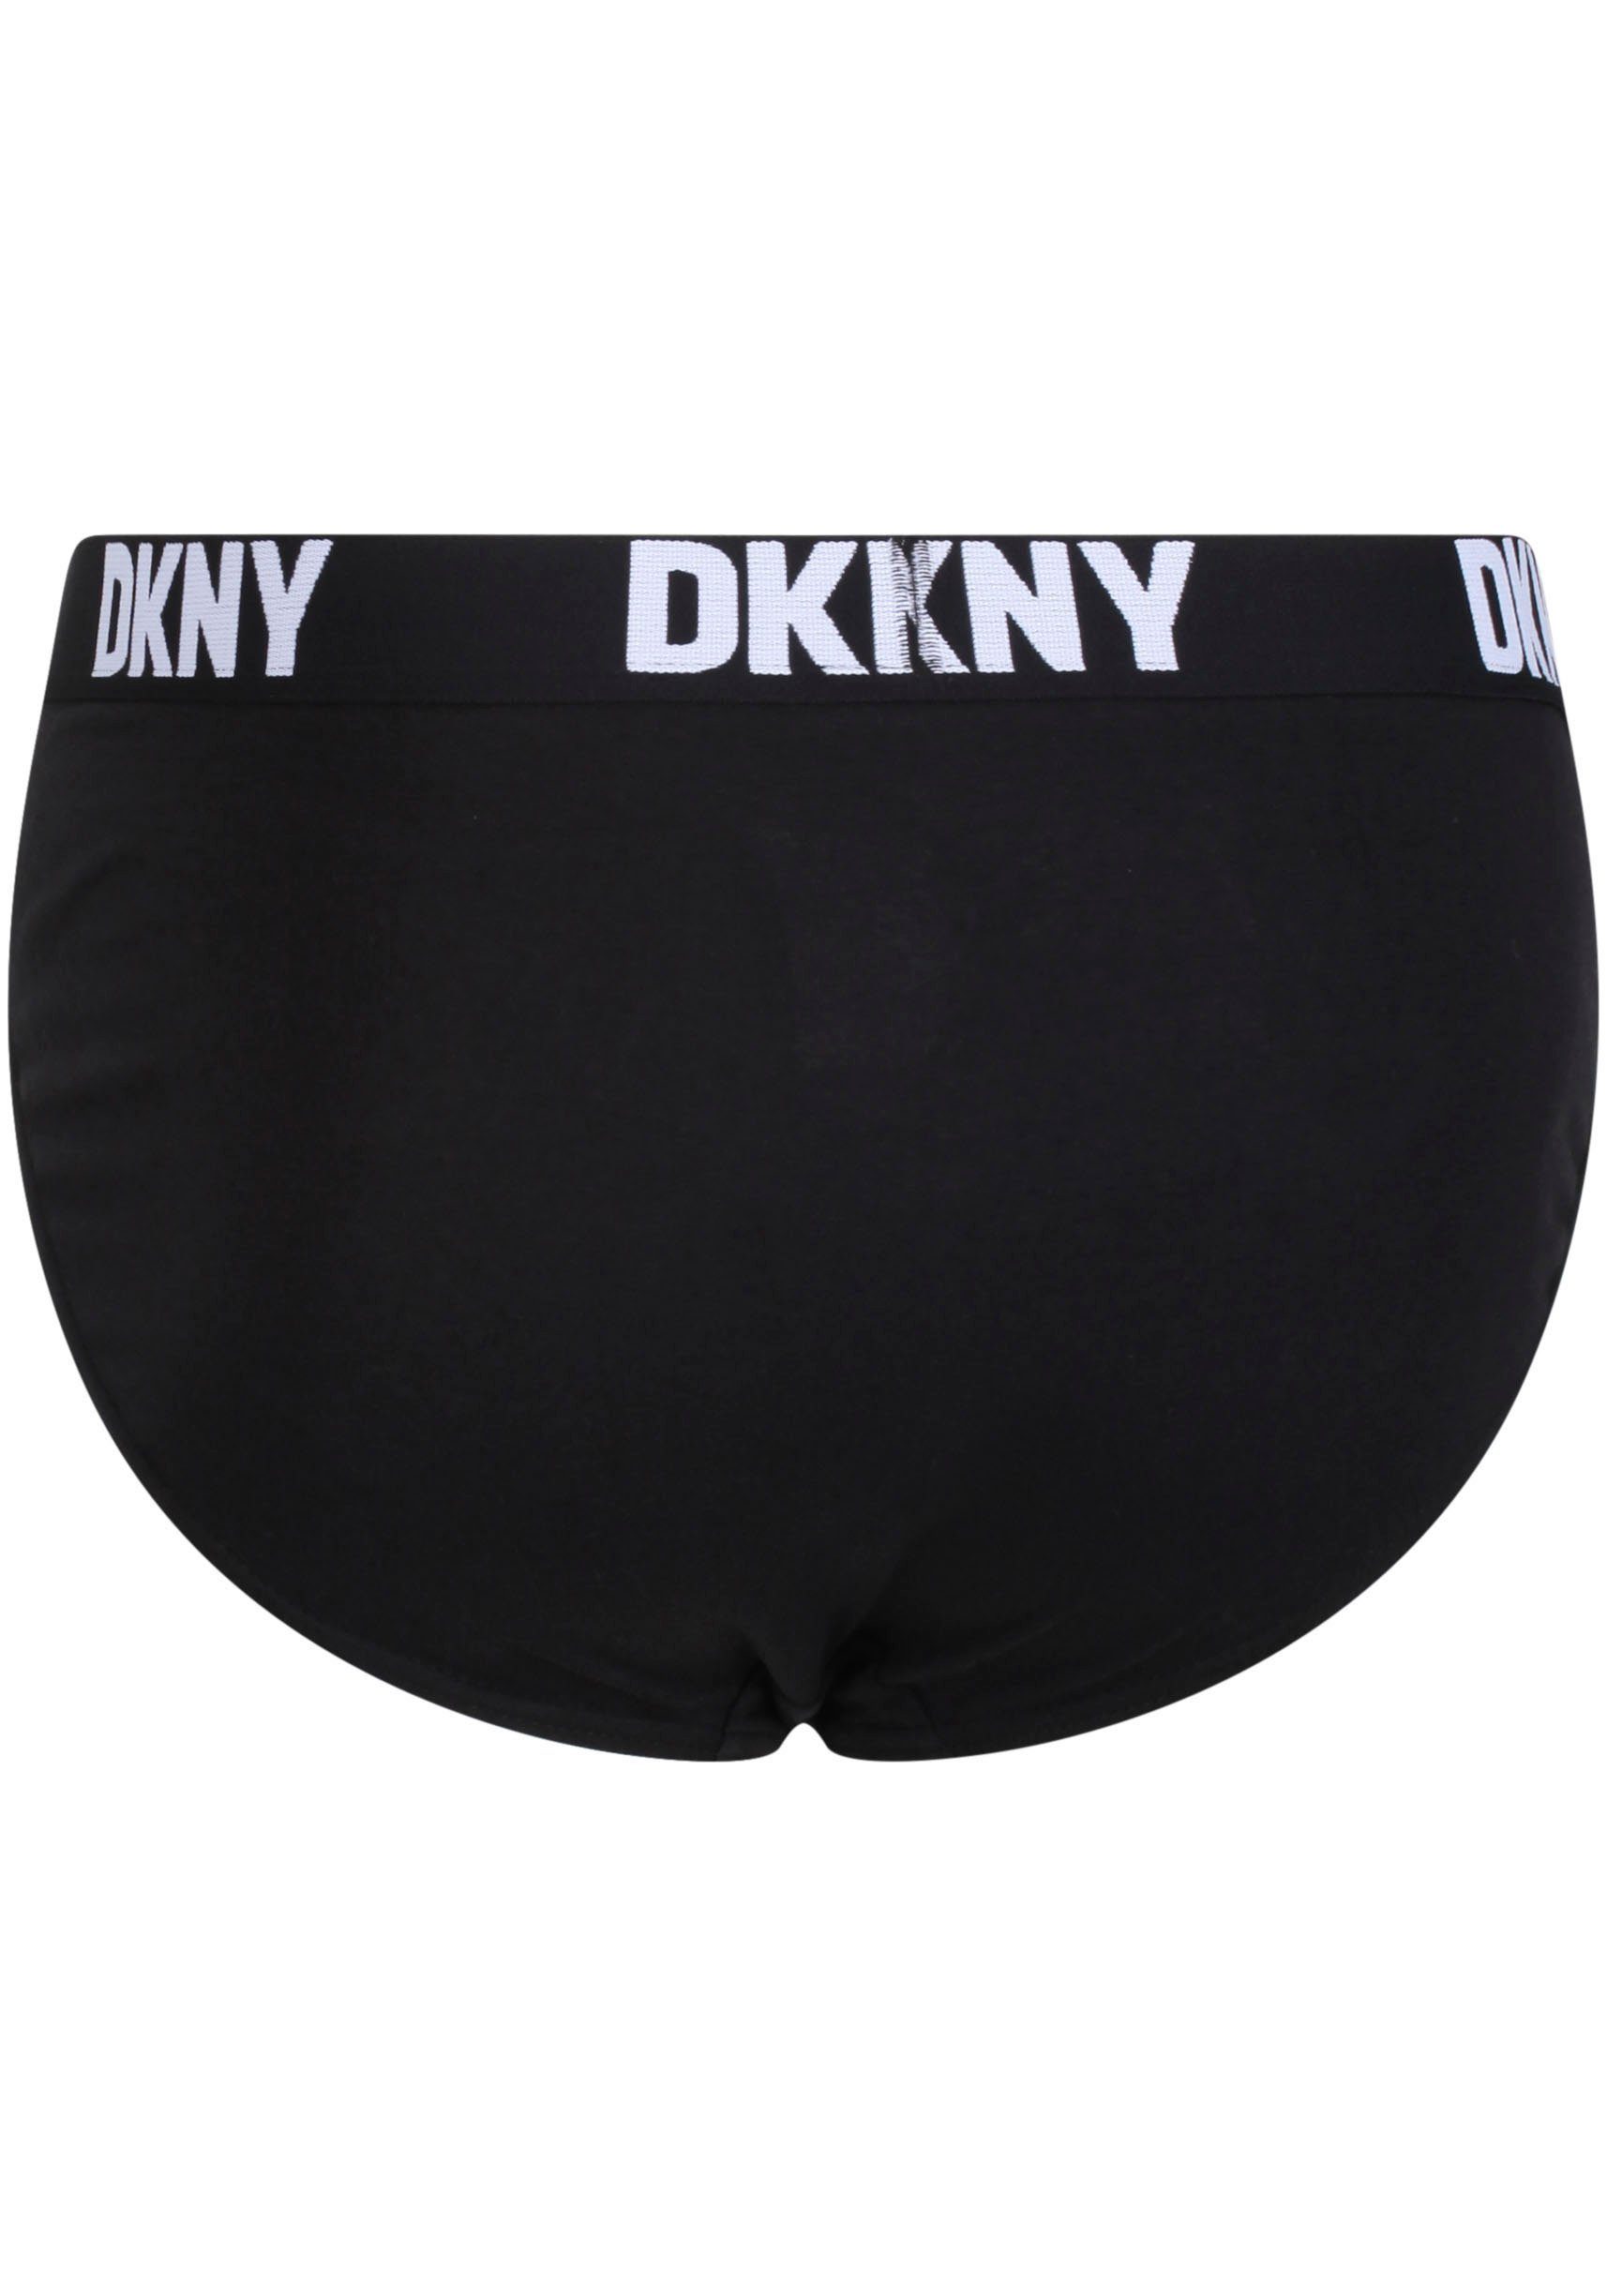 KELSO DKNY Slip schwarz